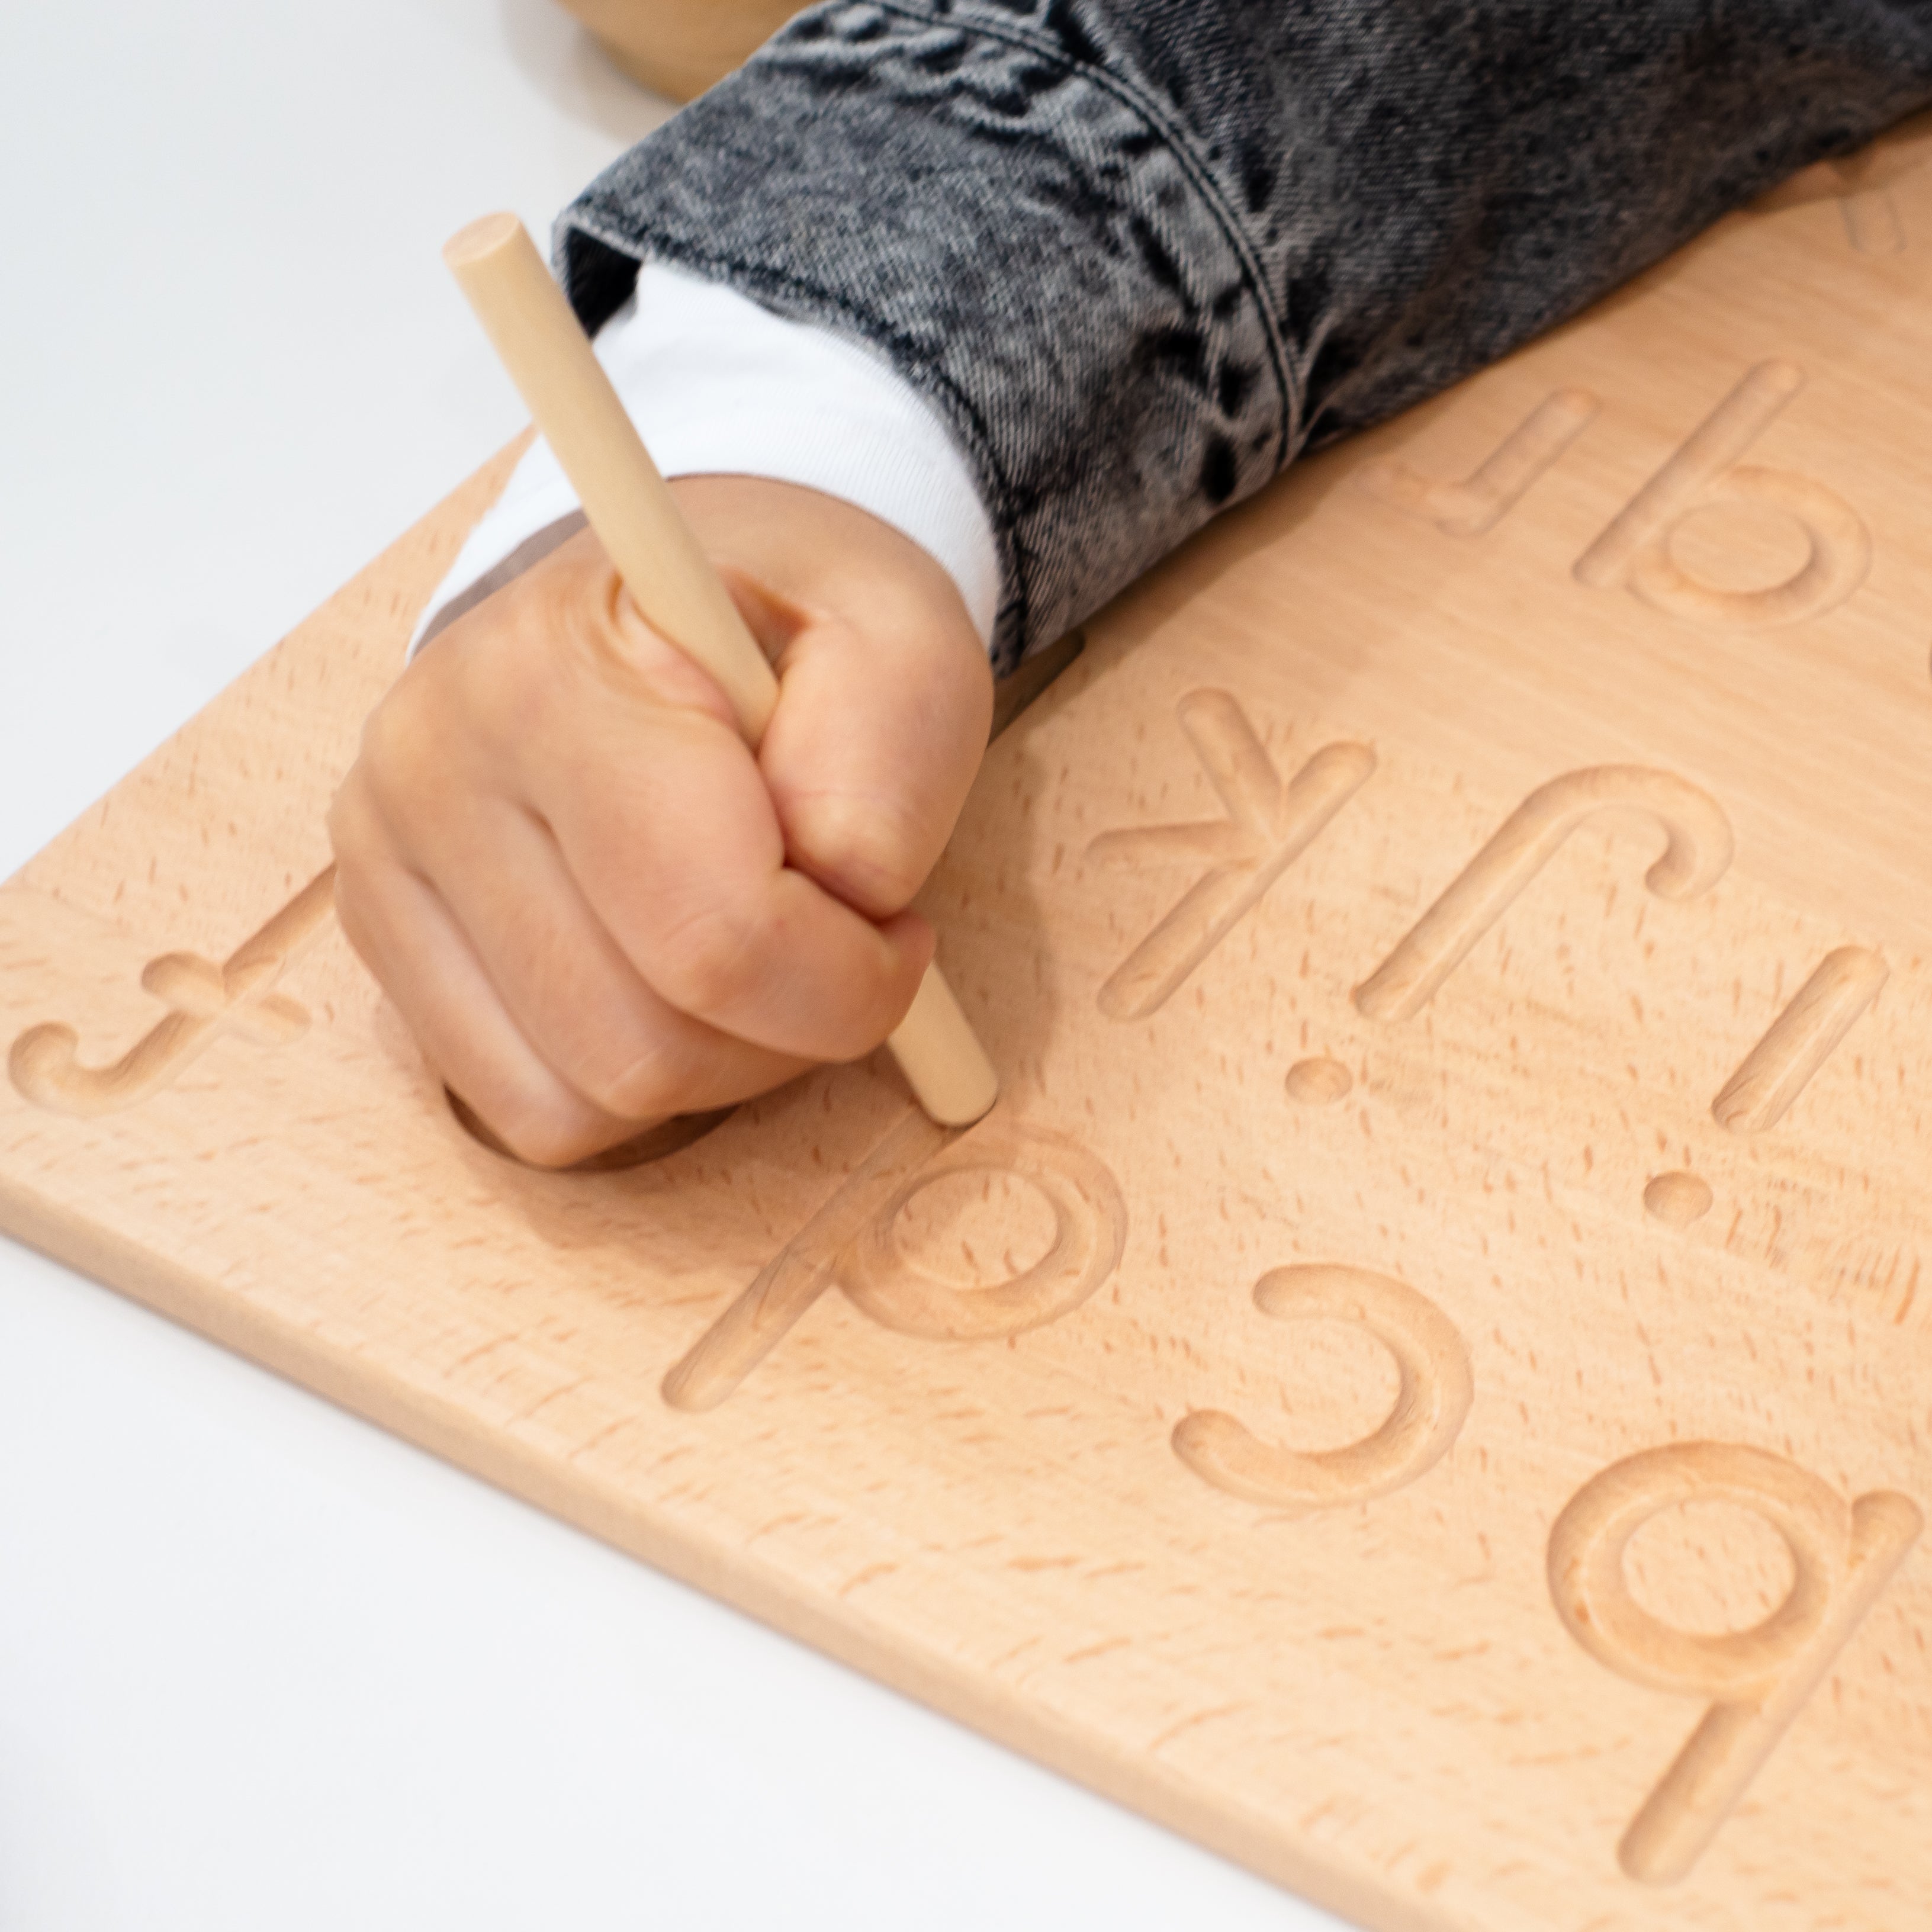 Wooden Montessori Alphabet Tracing Board